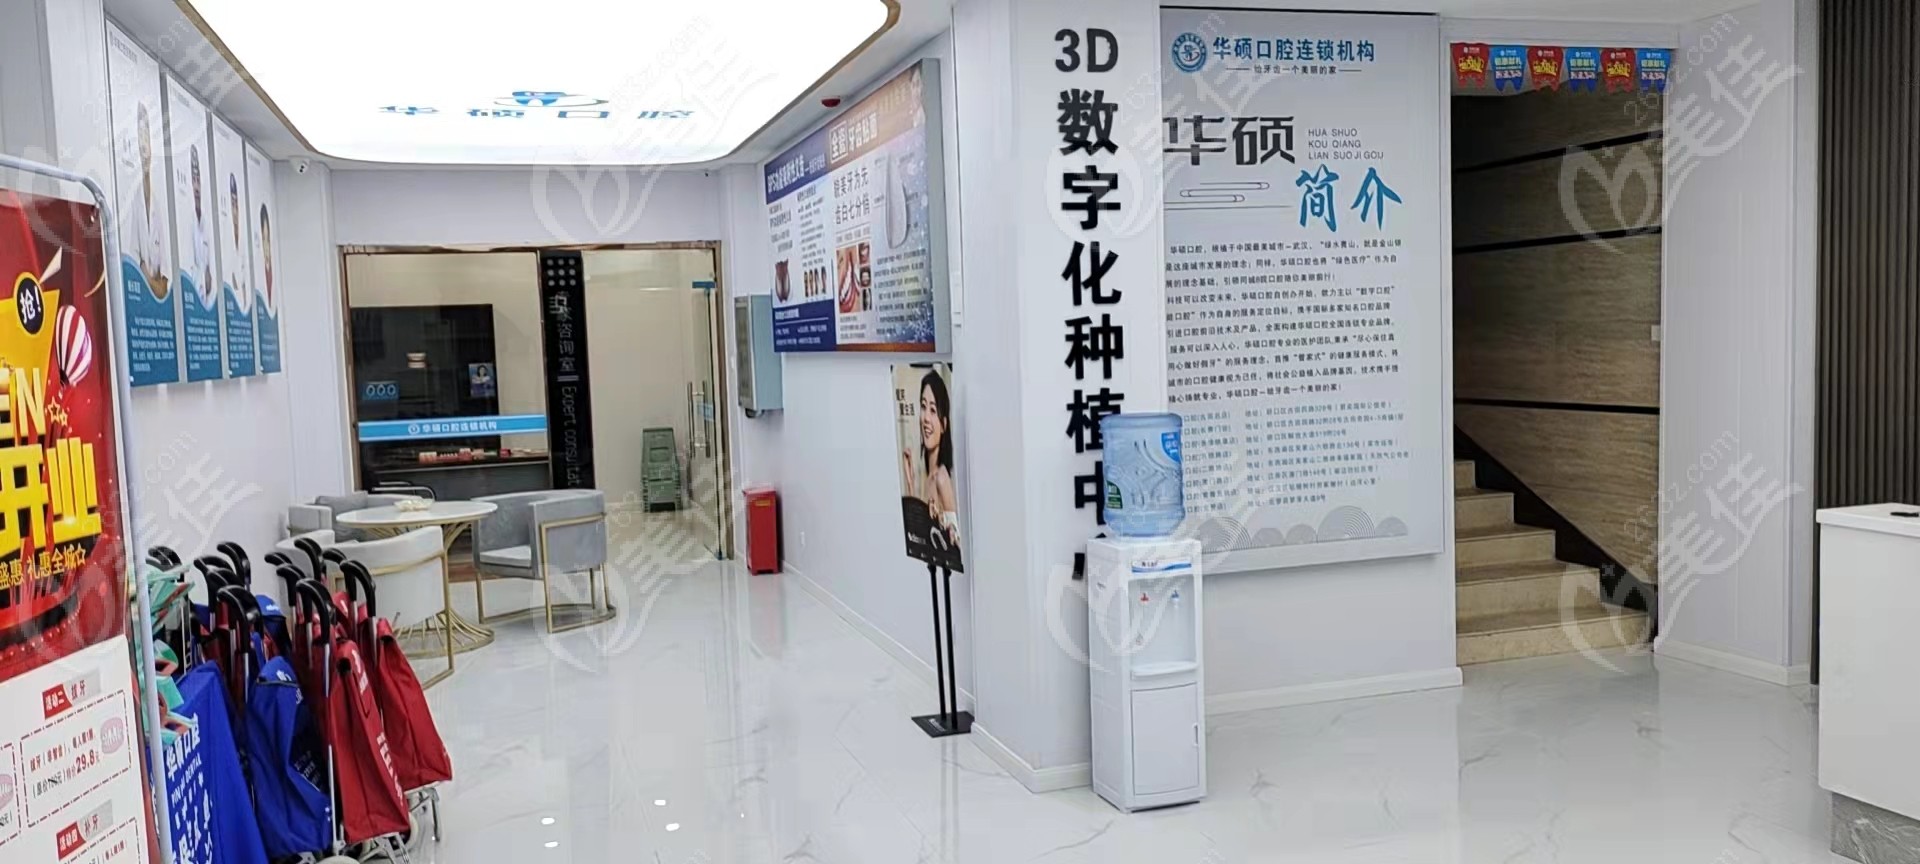 本院3D数字化种植牙中心